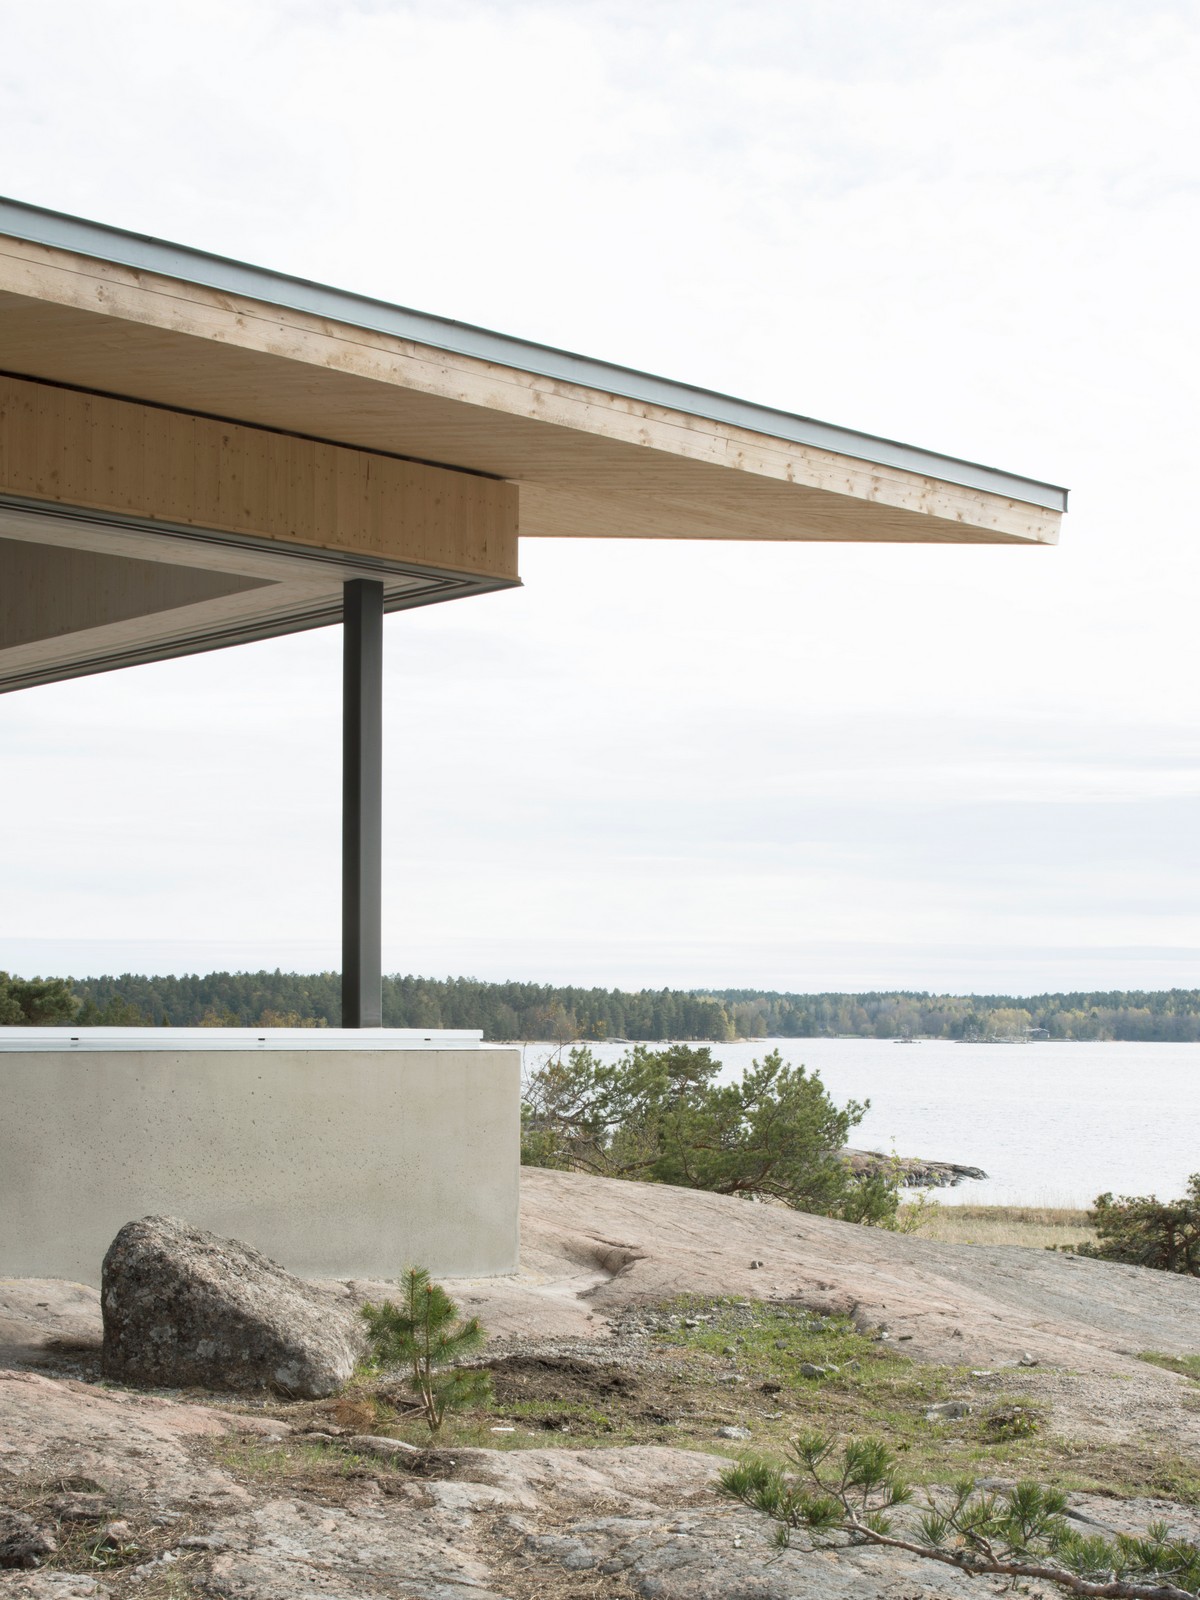 Современная резиденция на частном острове в Швеции Резиденция, острове, имеет, Швеции, места, частном, деревянную, опускается, занимают, полностью, которые, метра, шириной, окнами, стеклянными, представлены, резиденции, Фасады, свесами, широкими